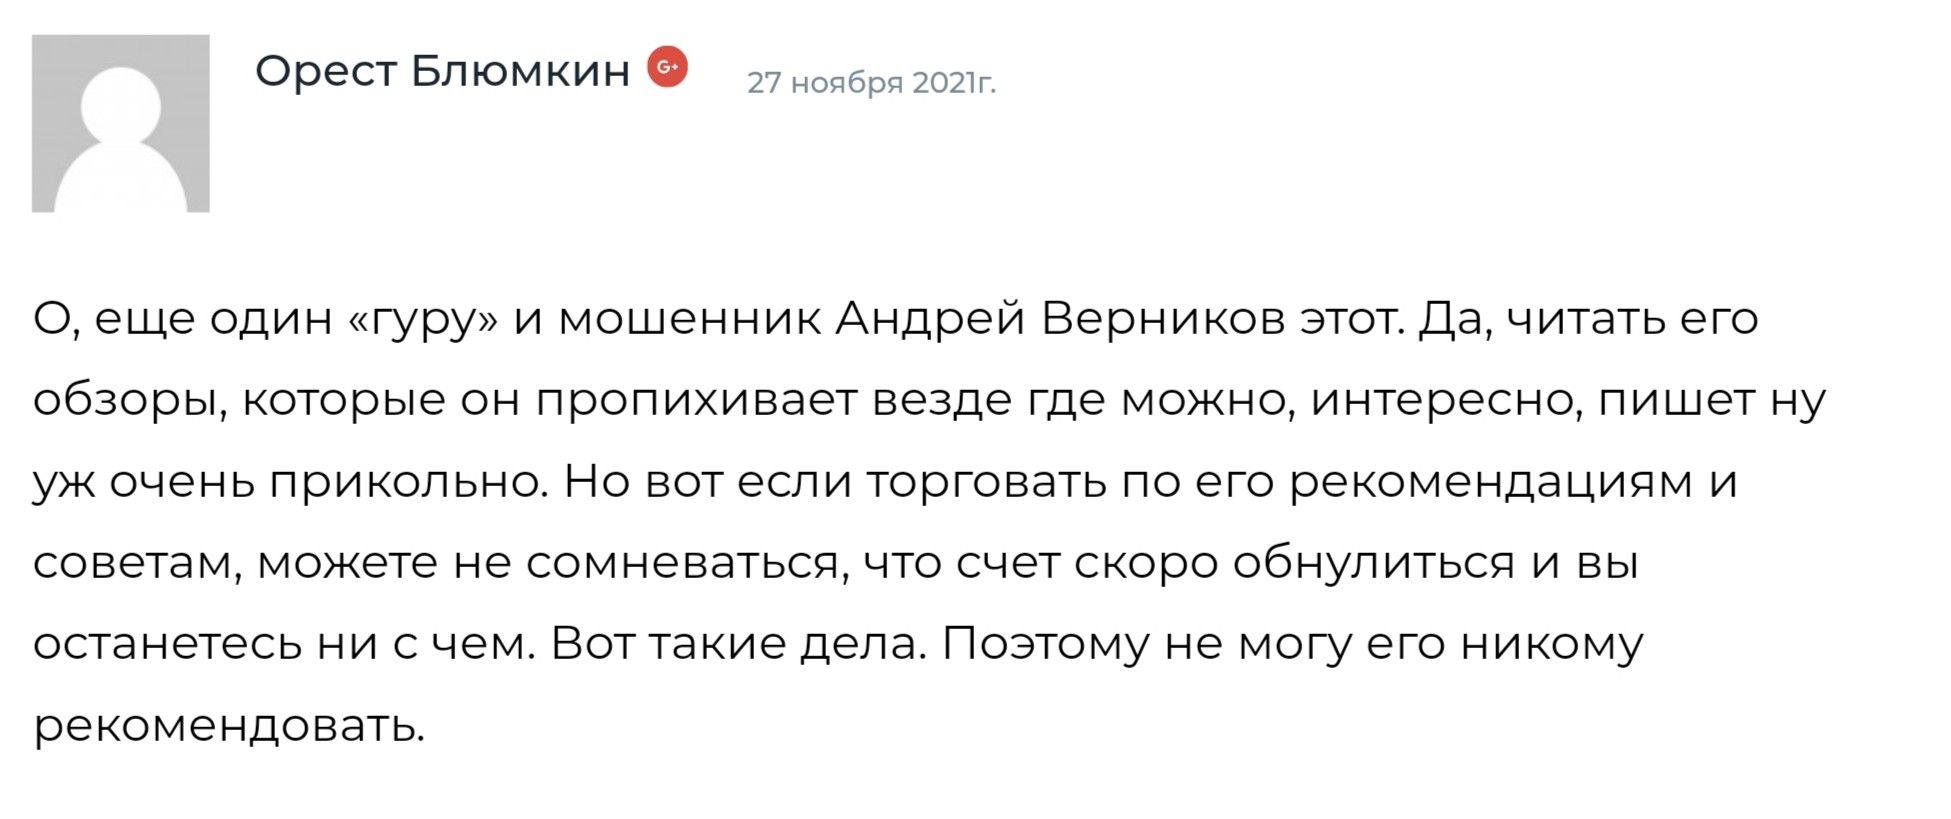 Андрей Верников отзывы